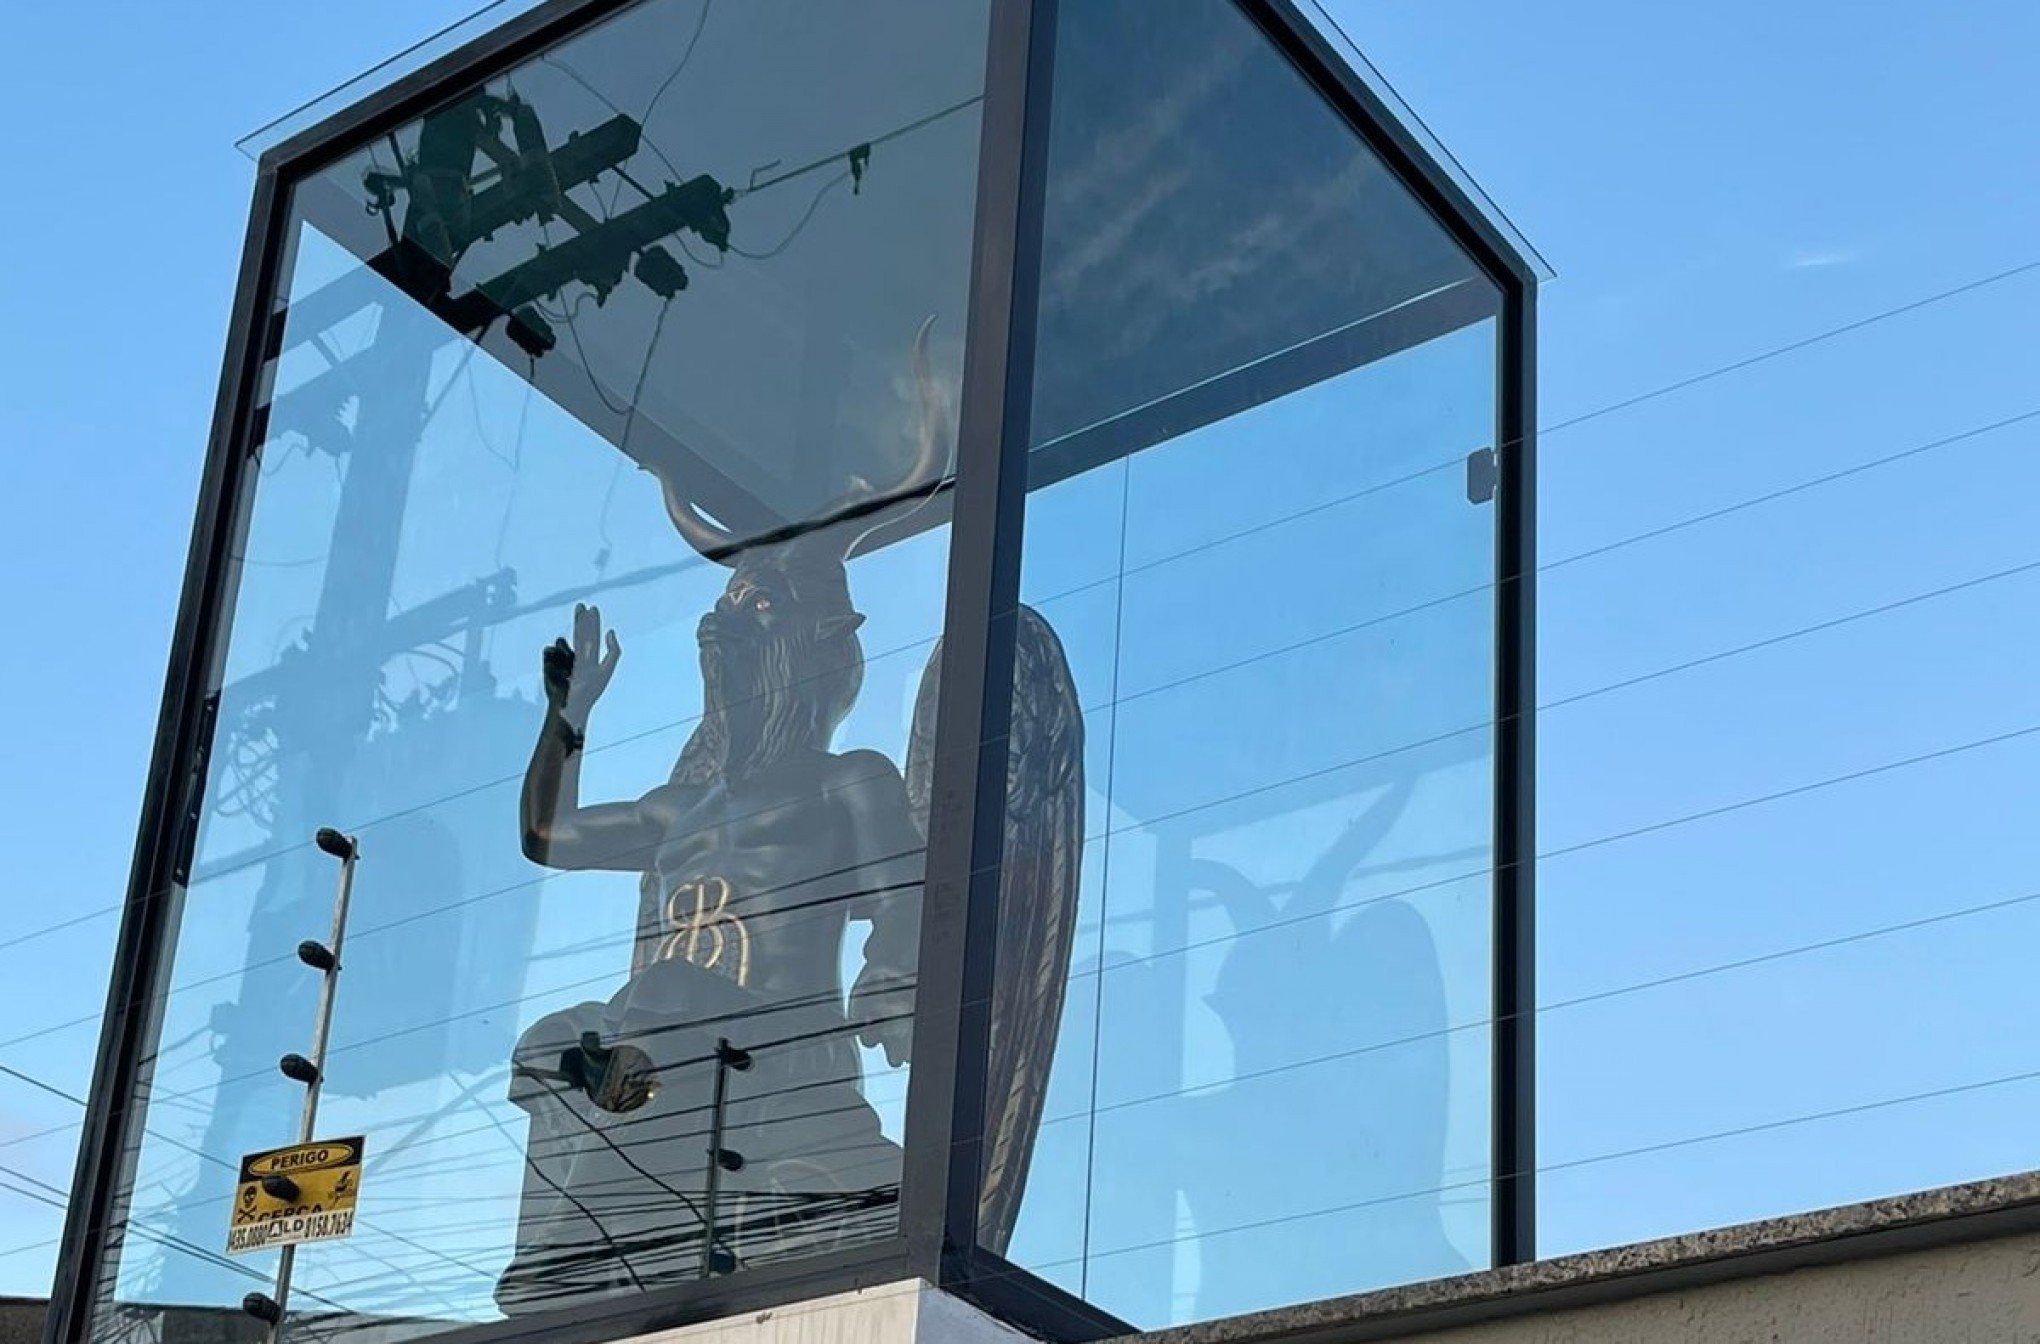 Casa do RS viraliza na internet por estátua de Belzebu na fachada: "Decidi colocar ele como um rei"